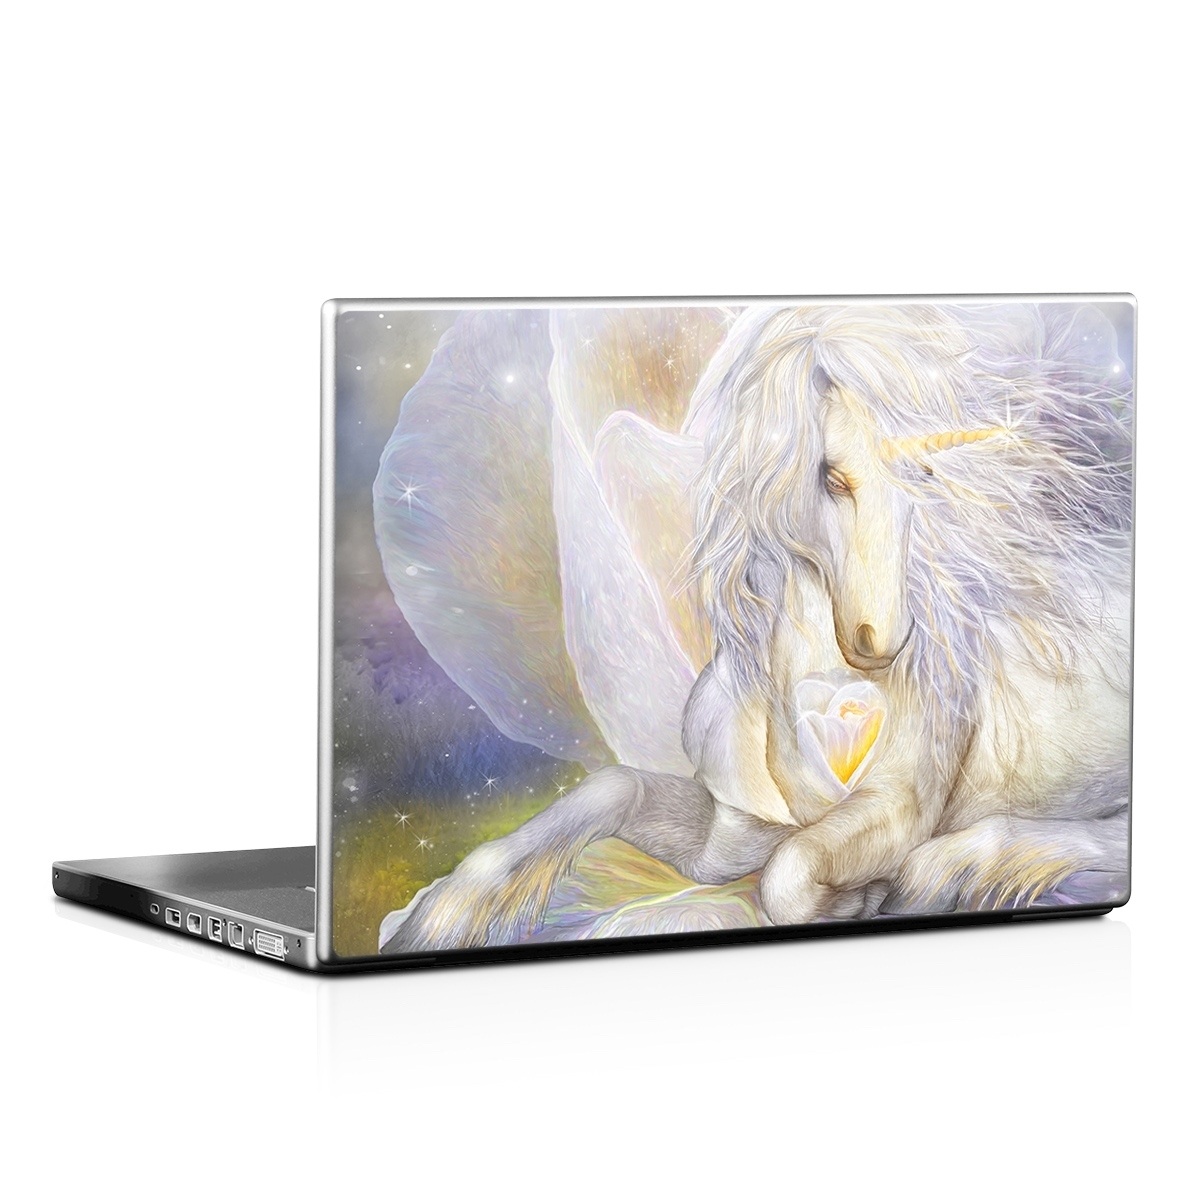 Laptop Skin - Heart Of Unicorn (Image 1)